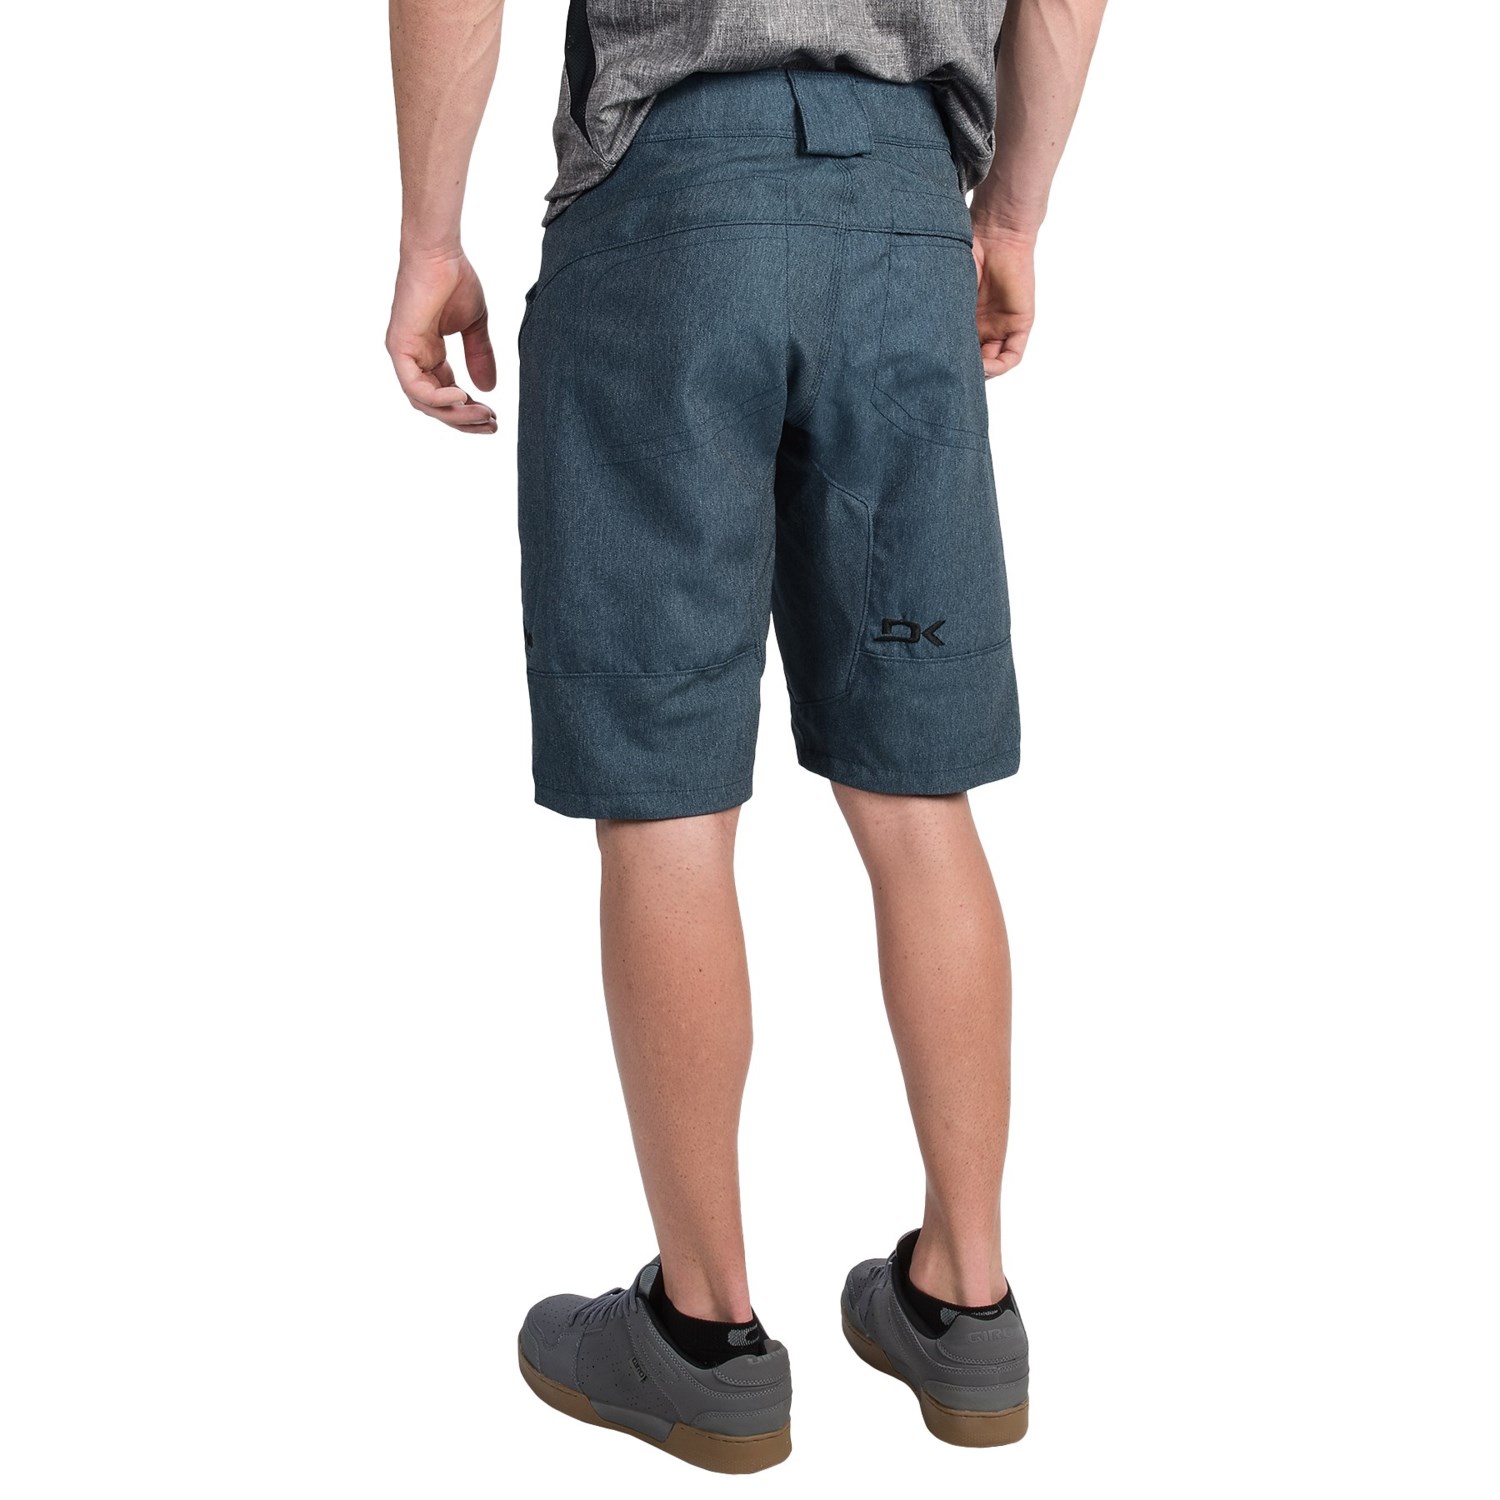 DaKine Ridge Bike Shorts (For Men) - Save 53%